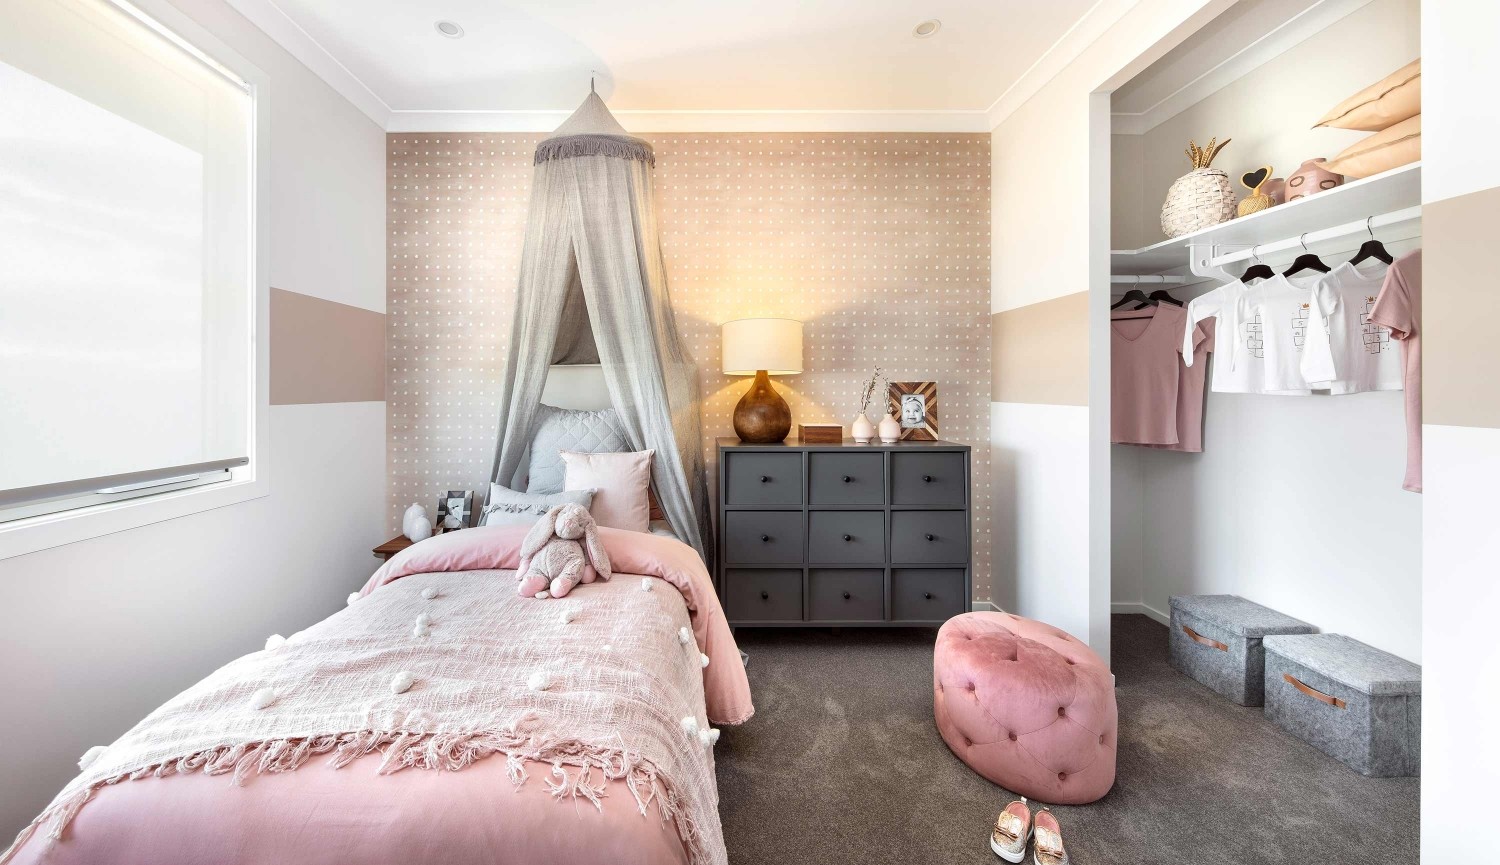 Harper Double Storey House Design - Bedroom